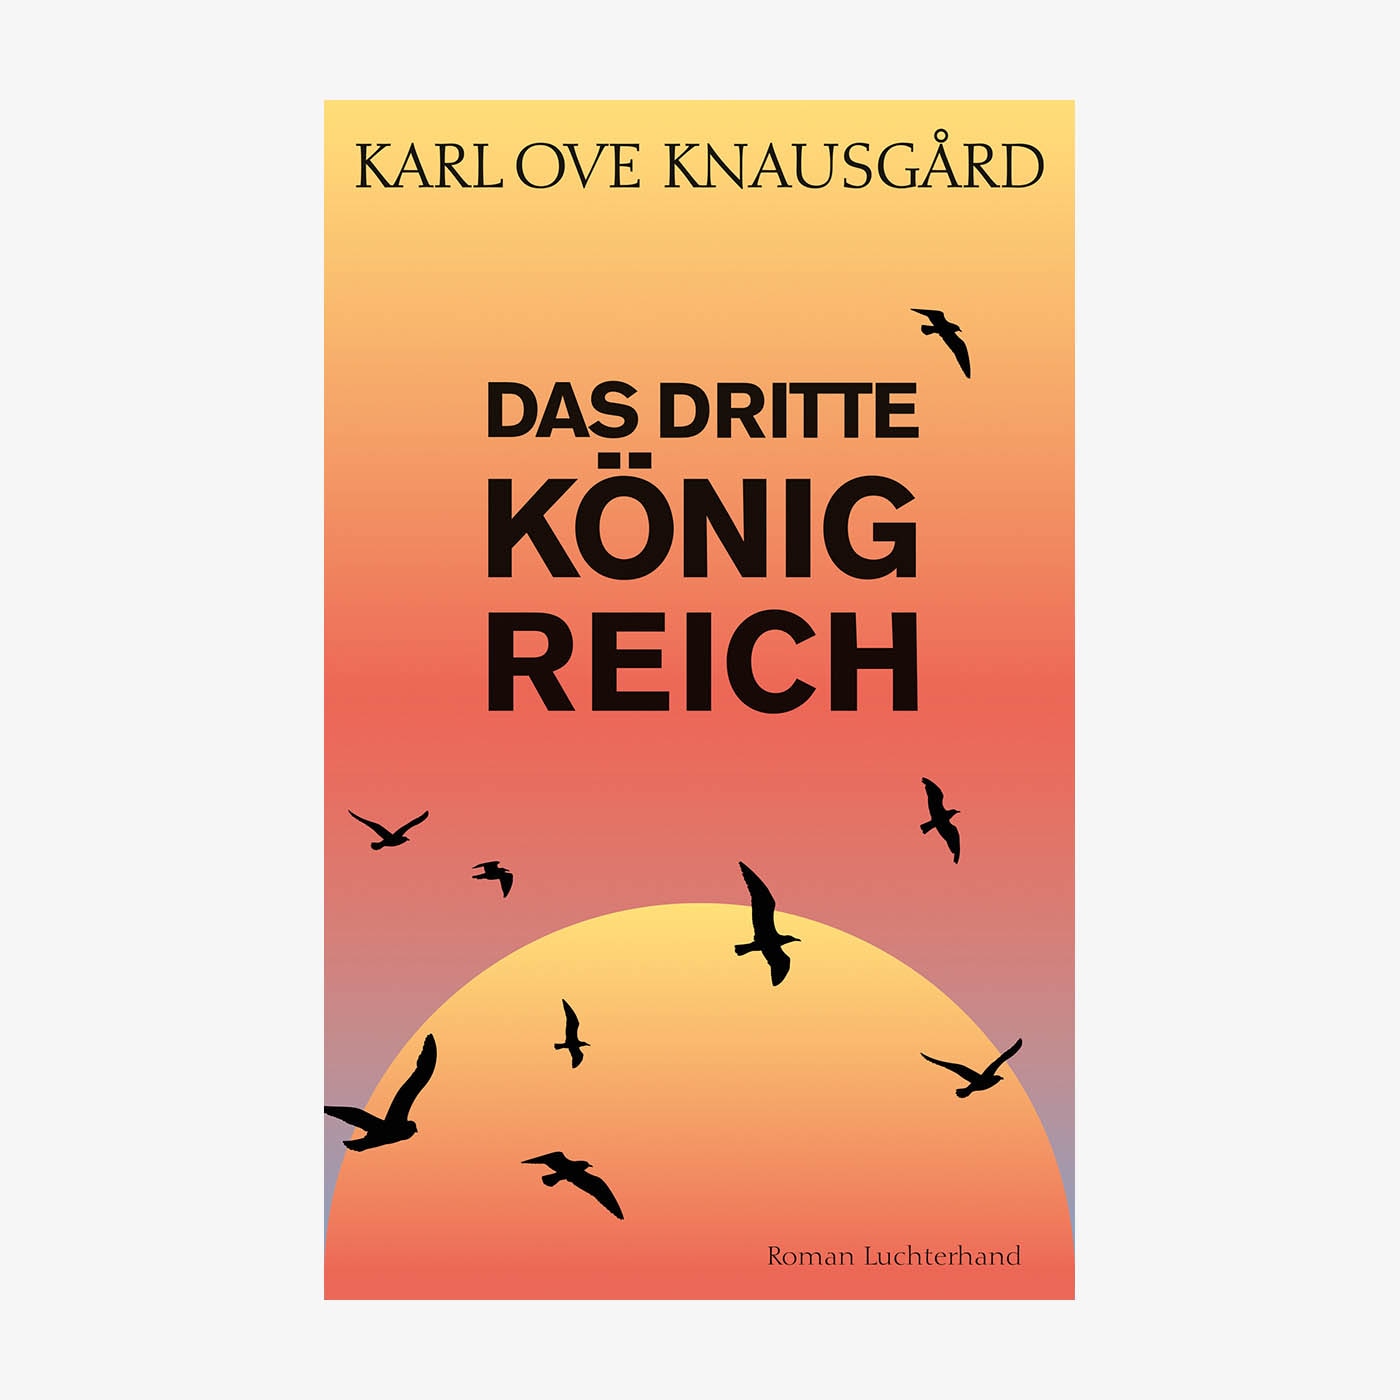 Neue Bücher: "Das dritte Königreich" von Karl Ove Knausgård